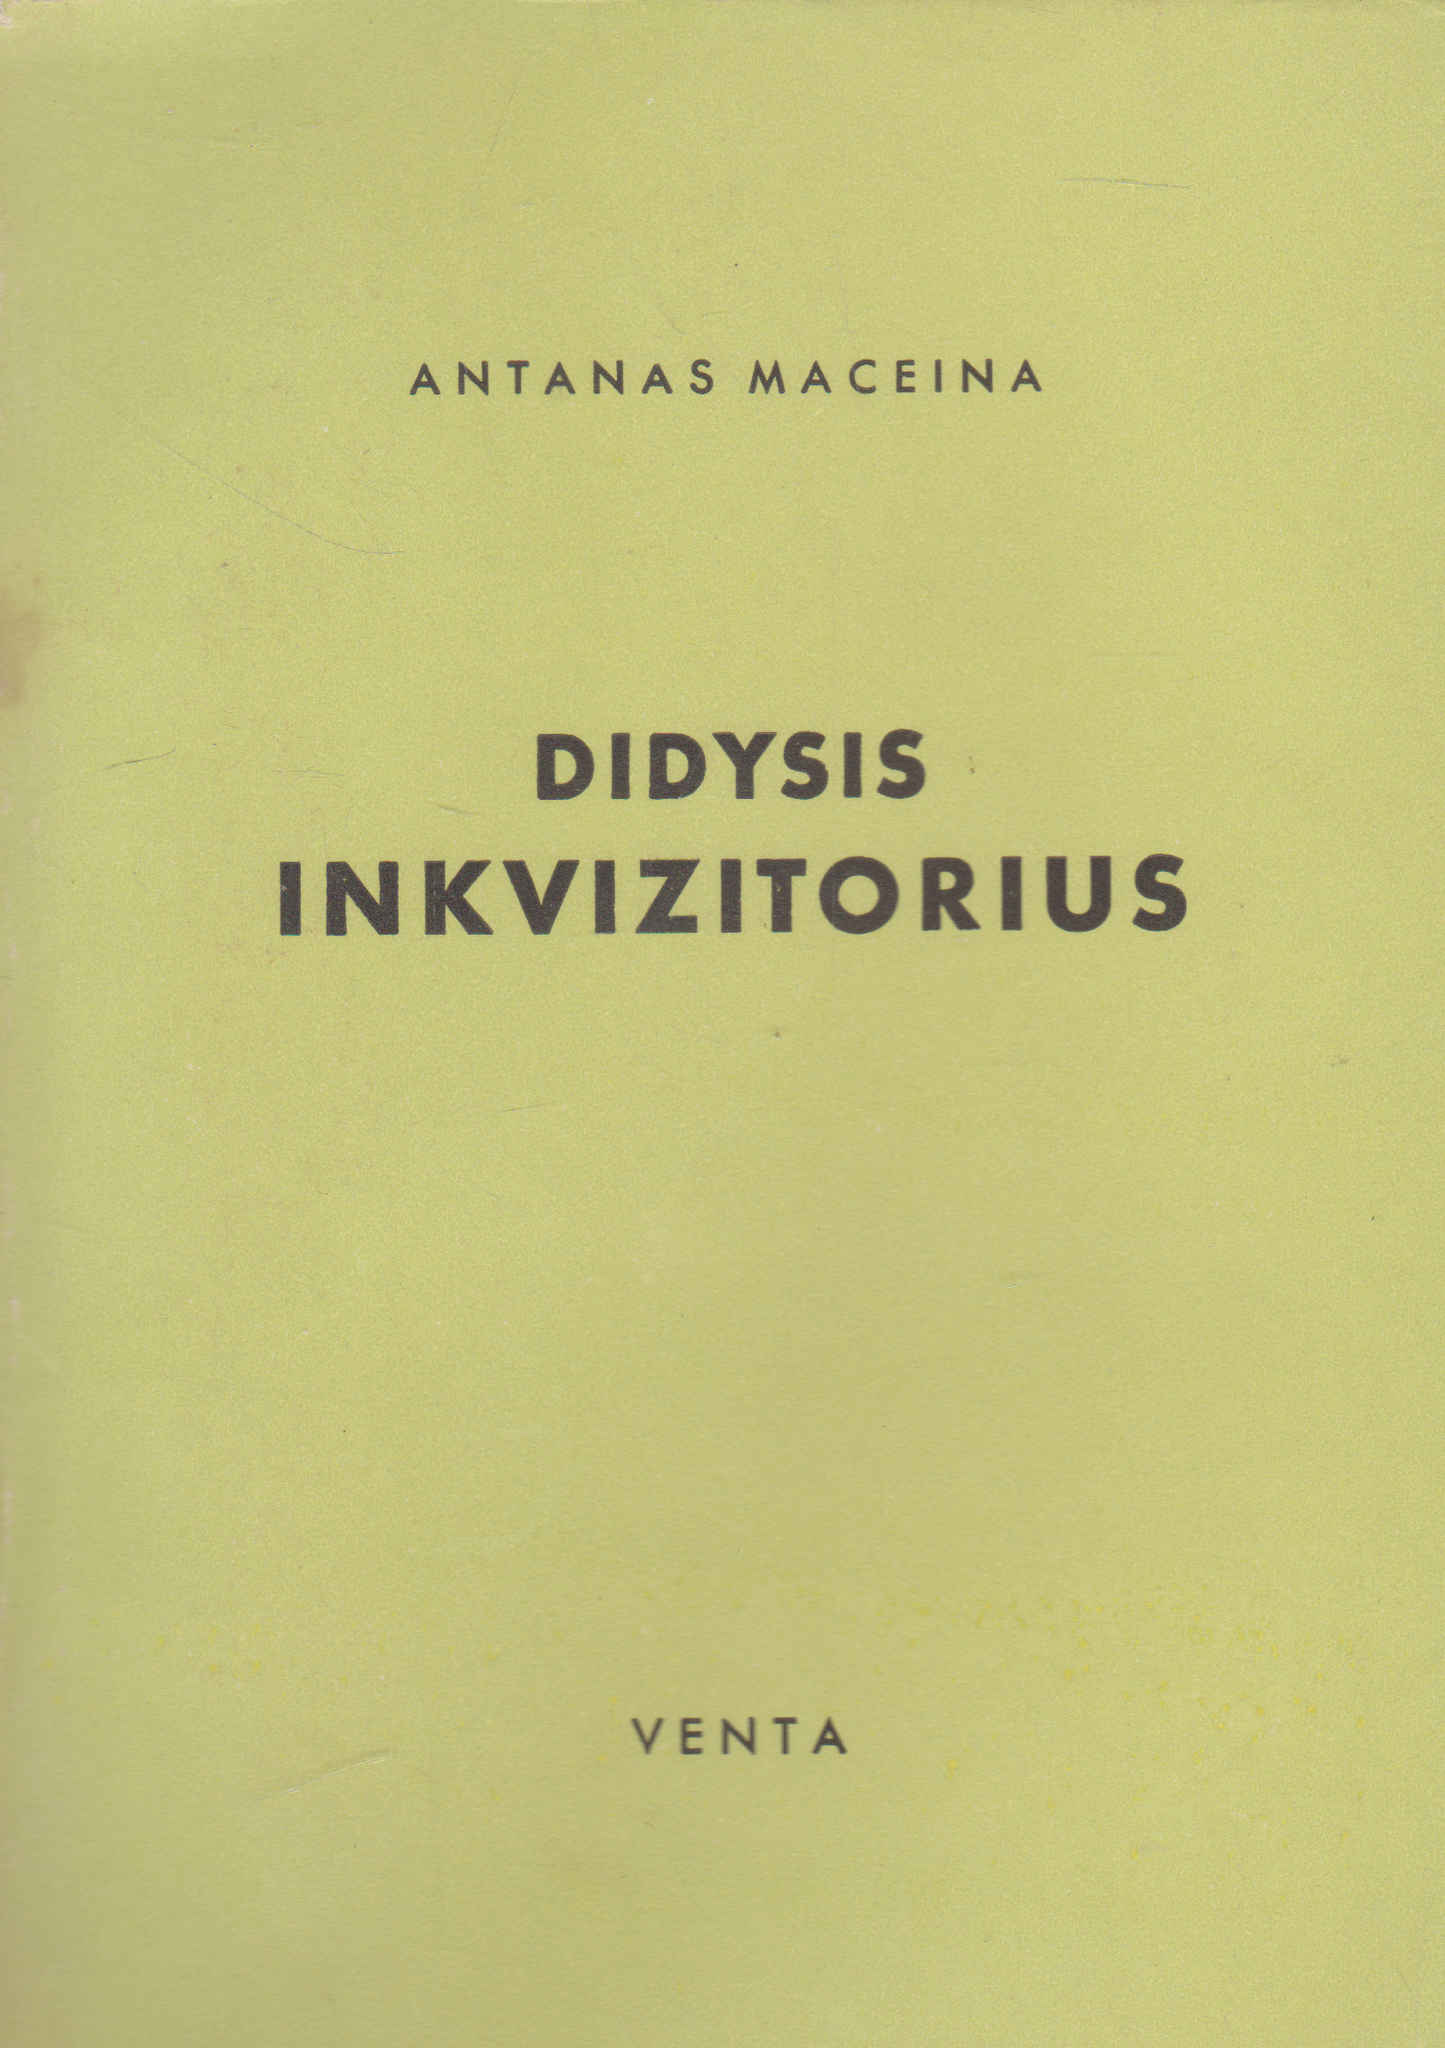 Antanas Maceina - Didysis inkvizitorius, 1950 m. Venta (su defektu)